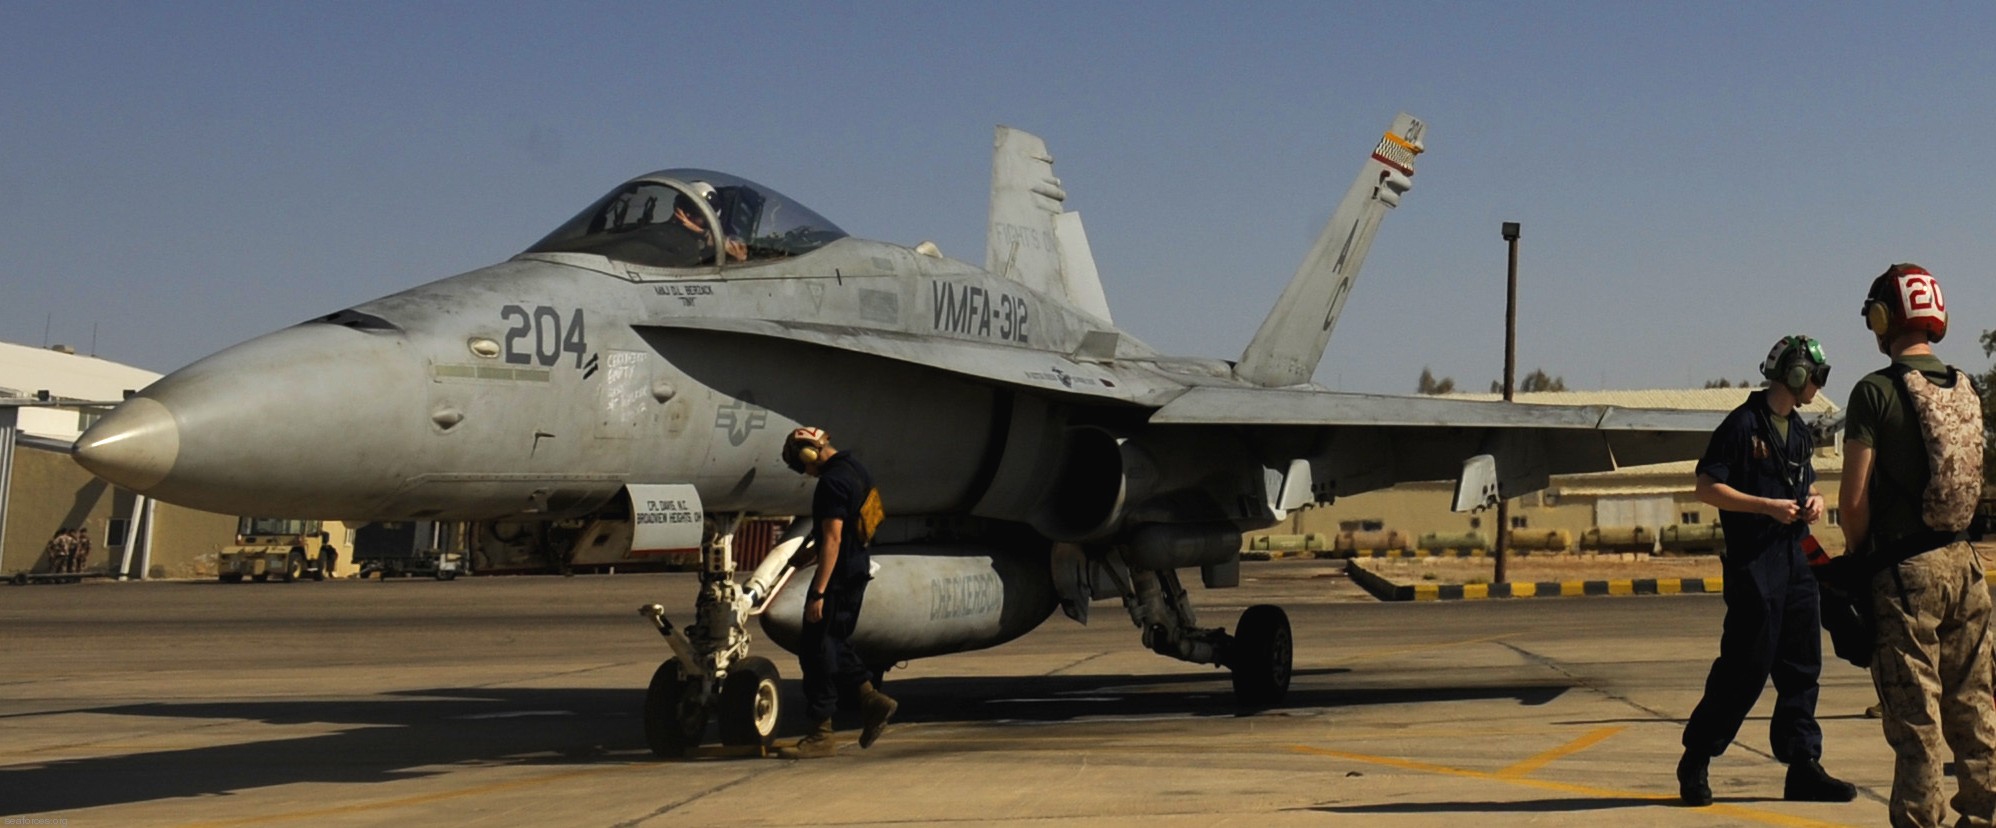 vmfa-312 checkerboards marine fighter attack squadron usmc f/a-18c hornet azraq airbase jordan